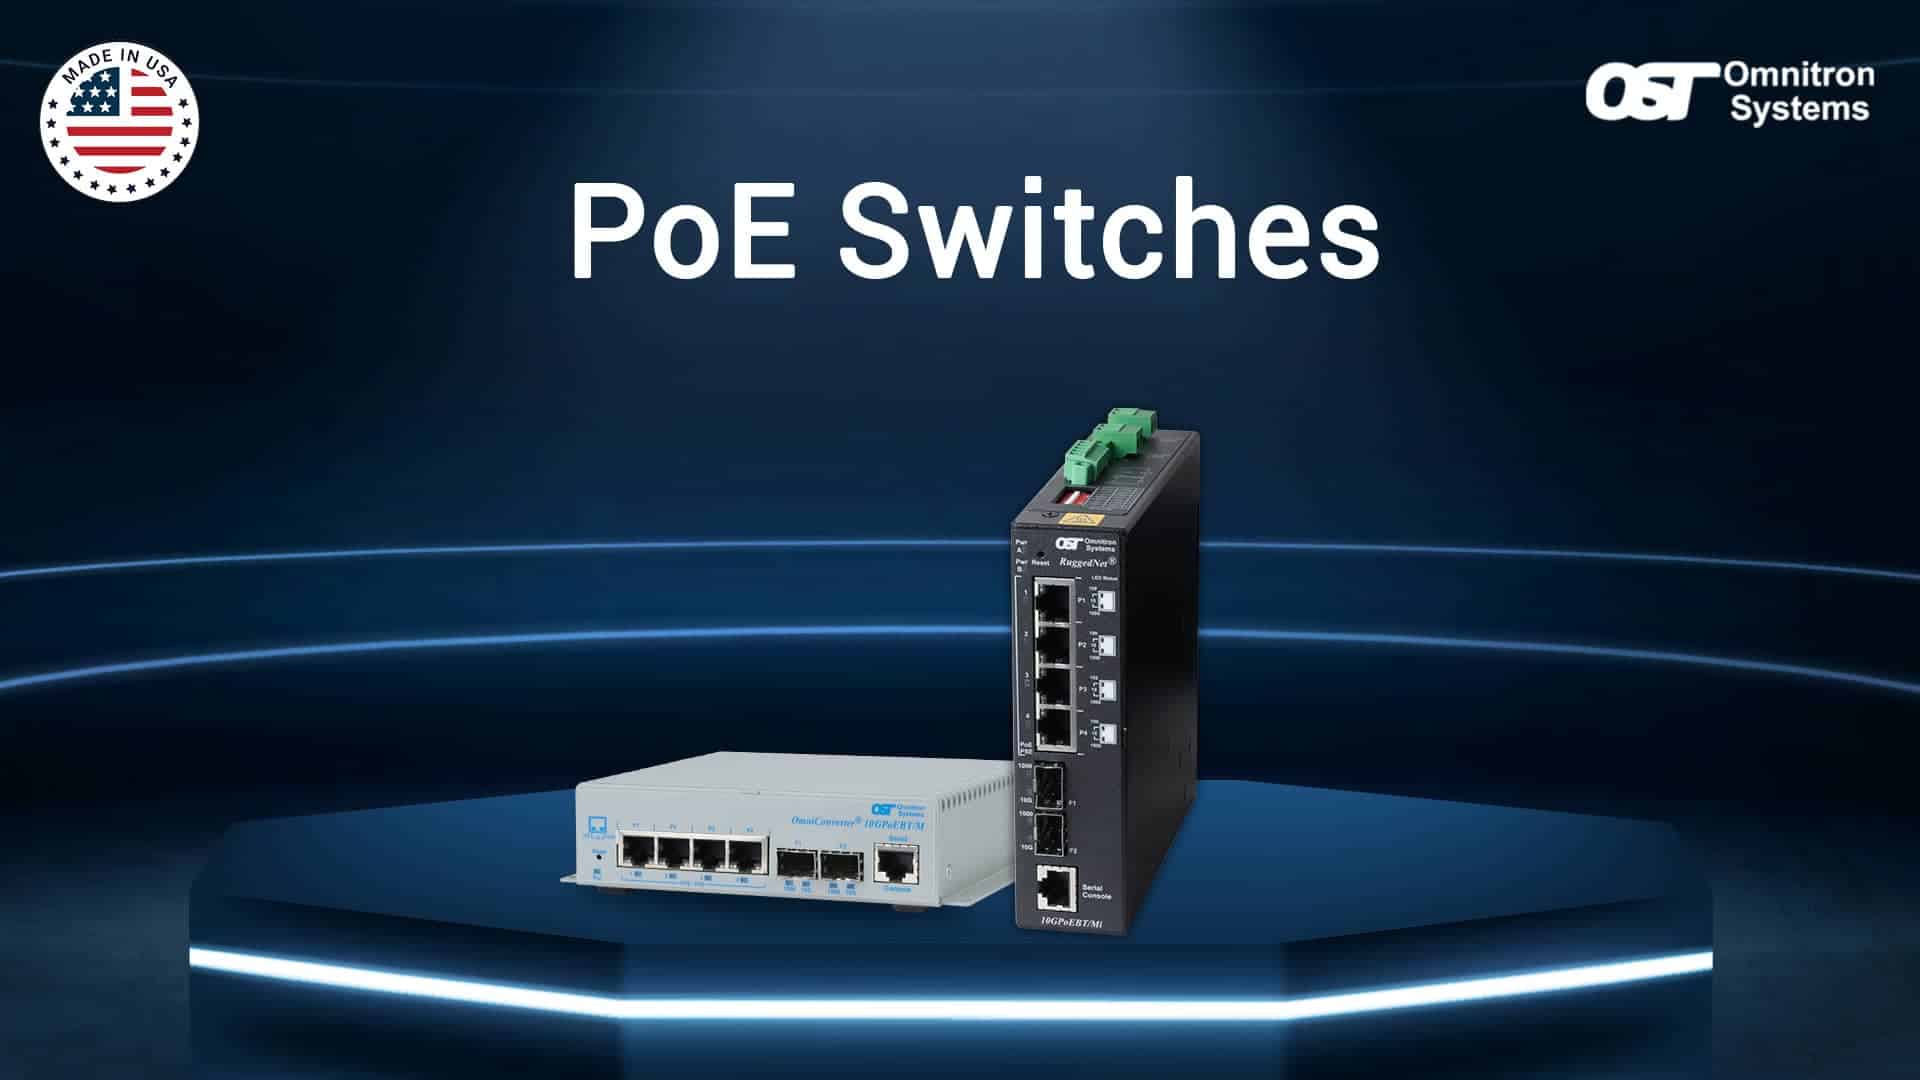 PoE switches